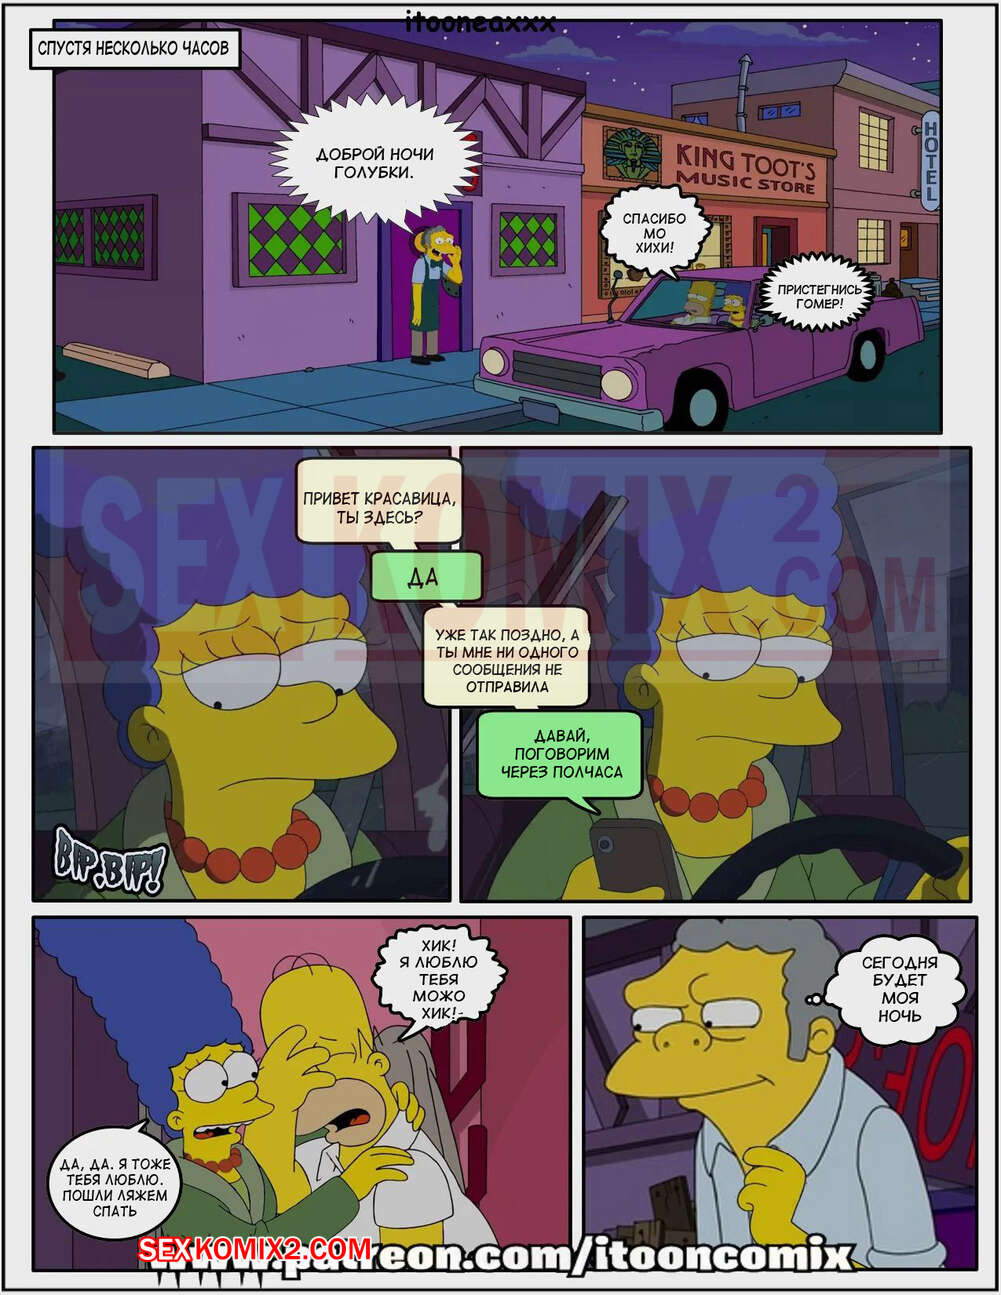 Нажмите, если вам нравится комикс. sexkomix3.com - Порно комикс Симпсоны. 